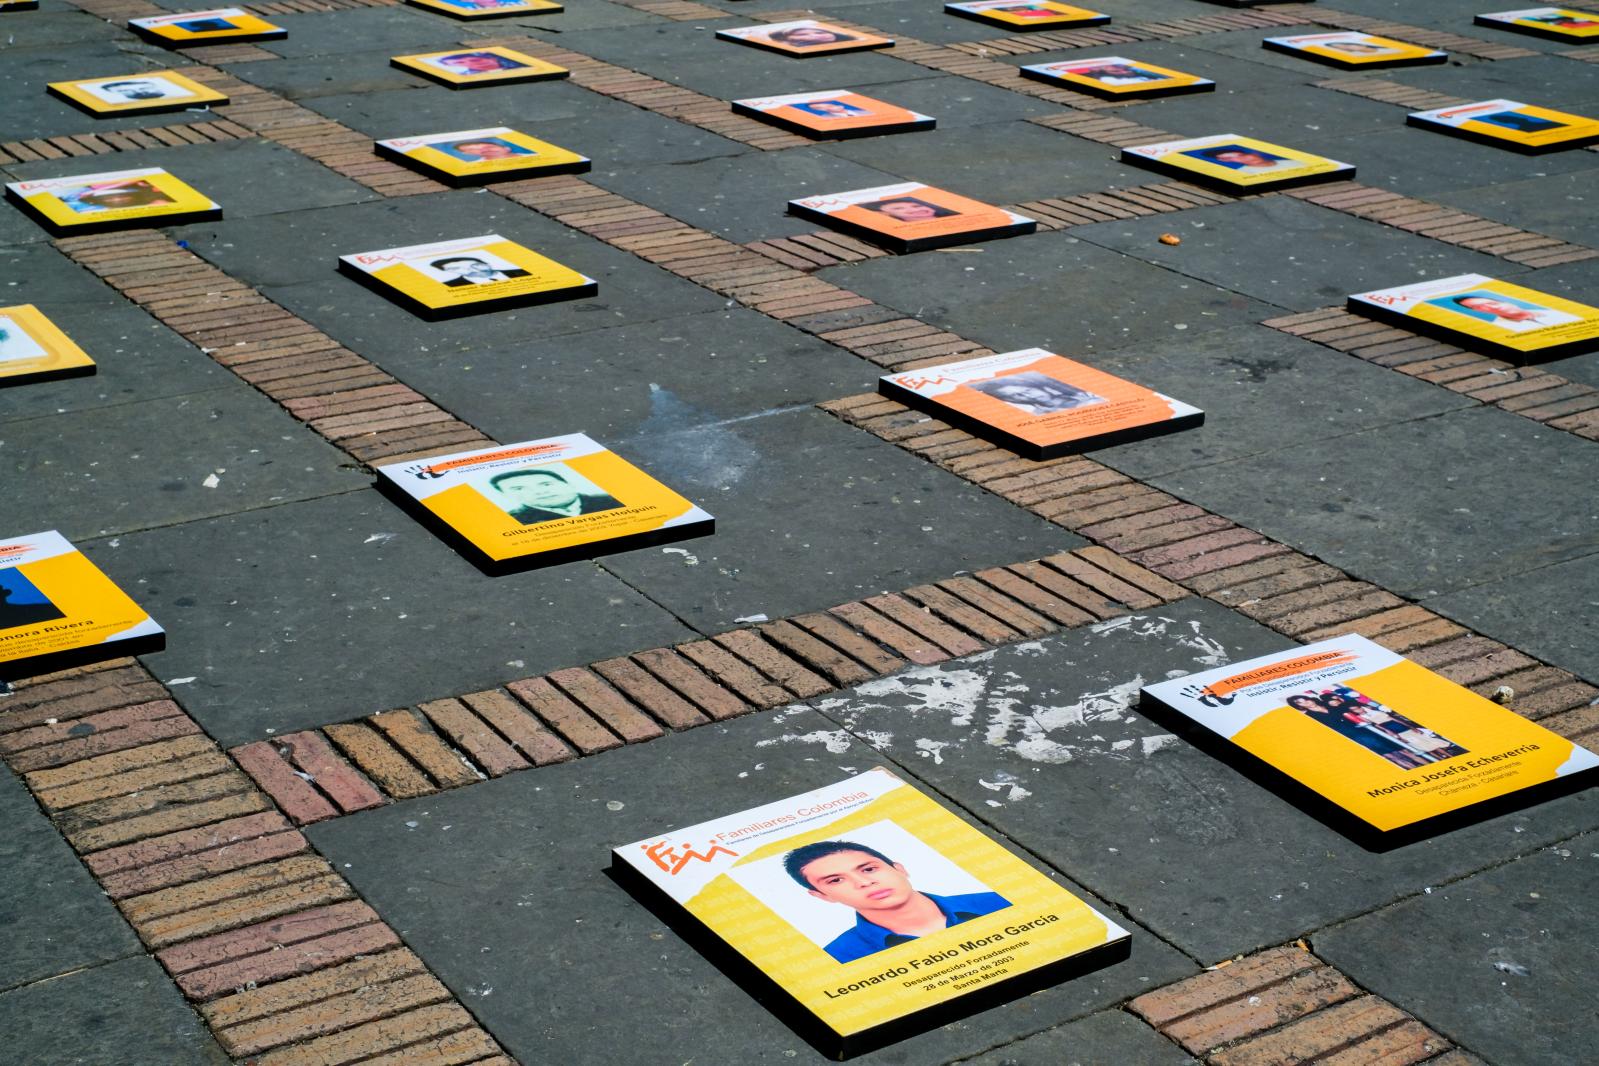 Dia Internacional das Vitimas d... SA DA BANDEIRA Bogota Colombia